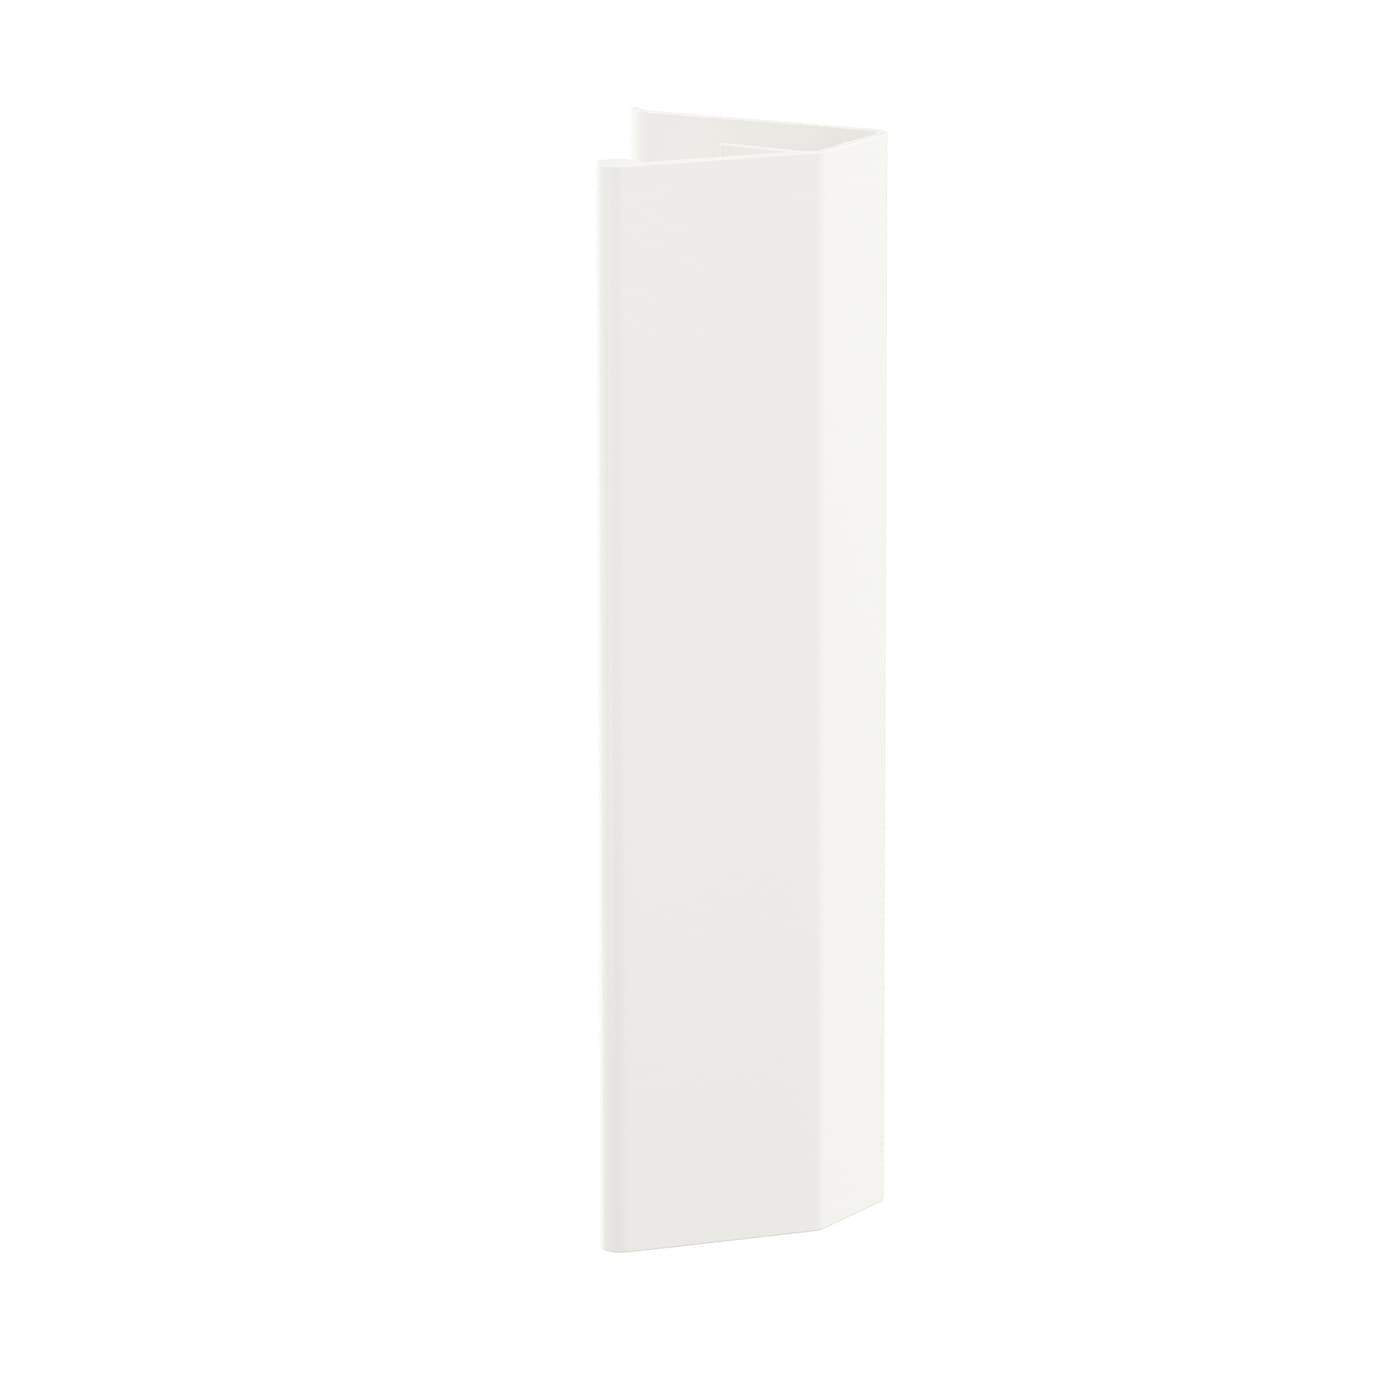 Ручка-скоба - IKEA LÄTTHET/LATTHET, 13 см, белый, ЛЭТТХЕТ ИКЕА